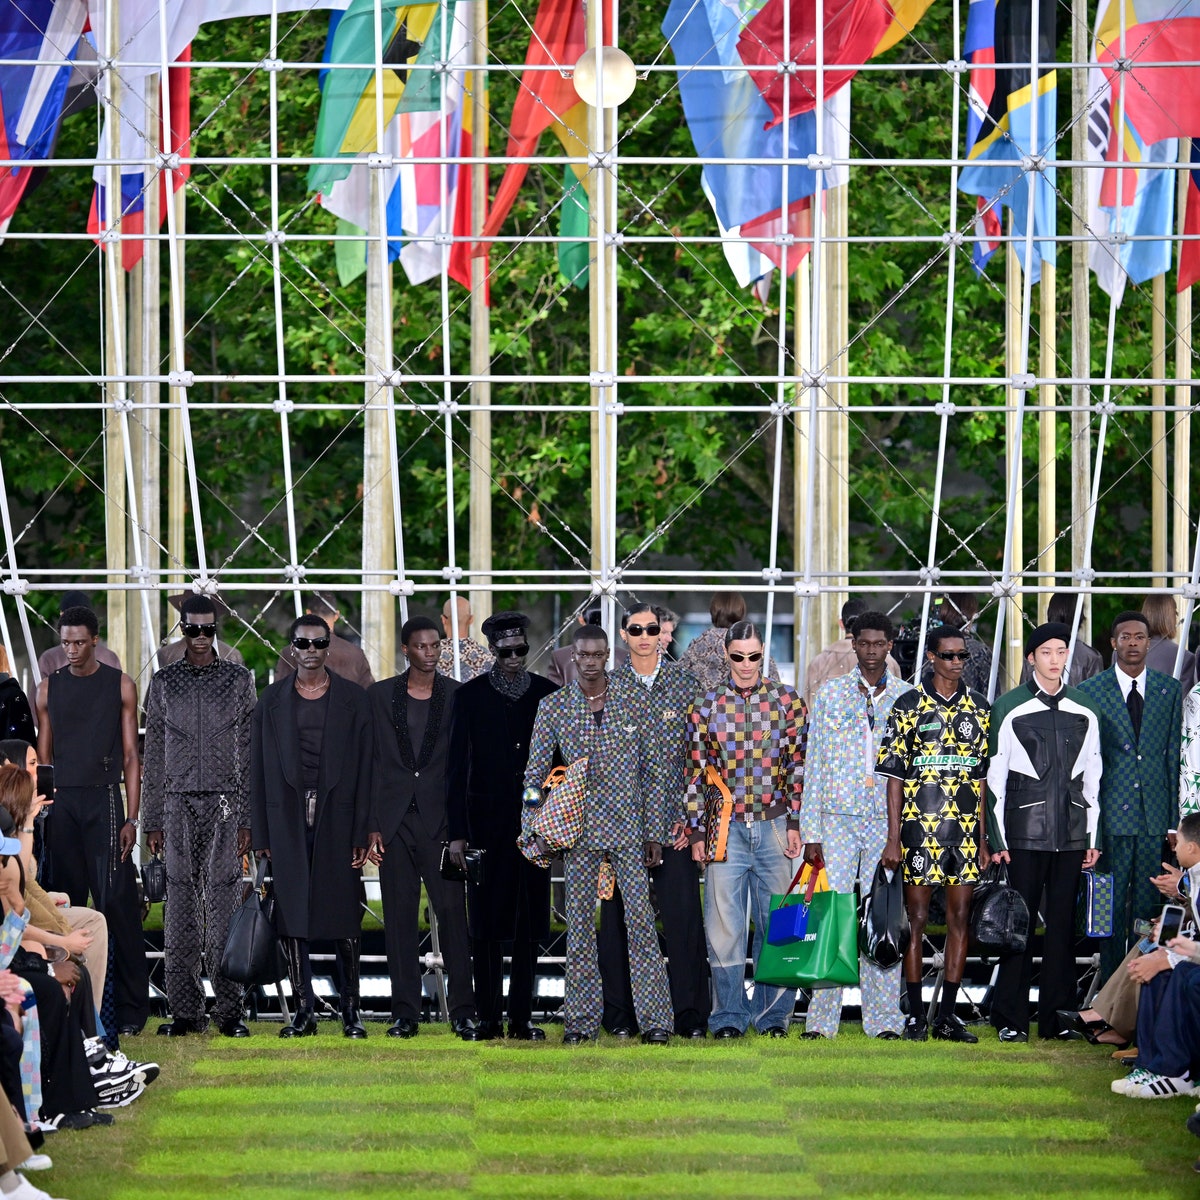 Condividere il mondo, casa dell'umanità: la sfilata uomo di Louis Vuitton nel giardino della Maison de l'UNESCO